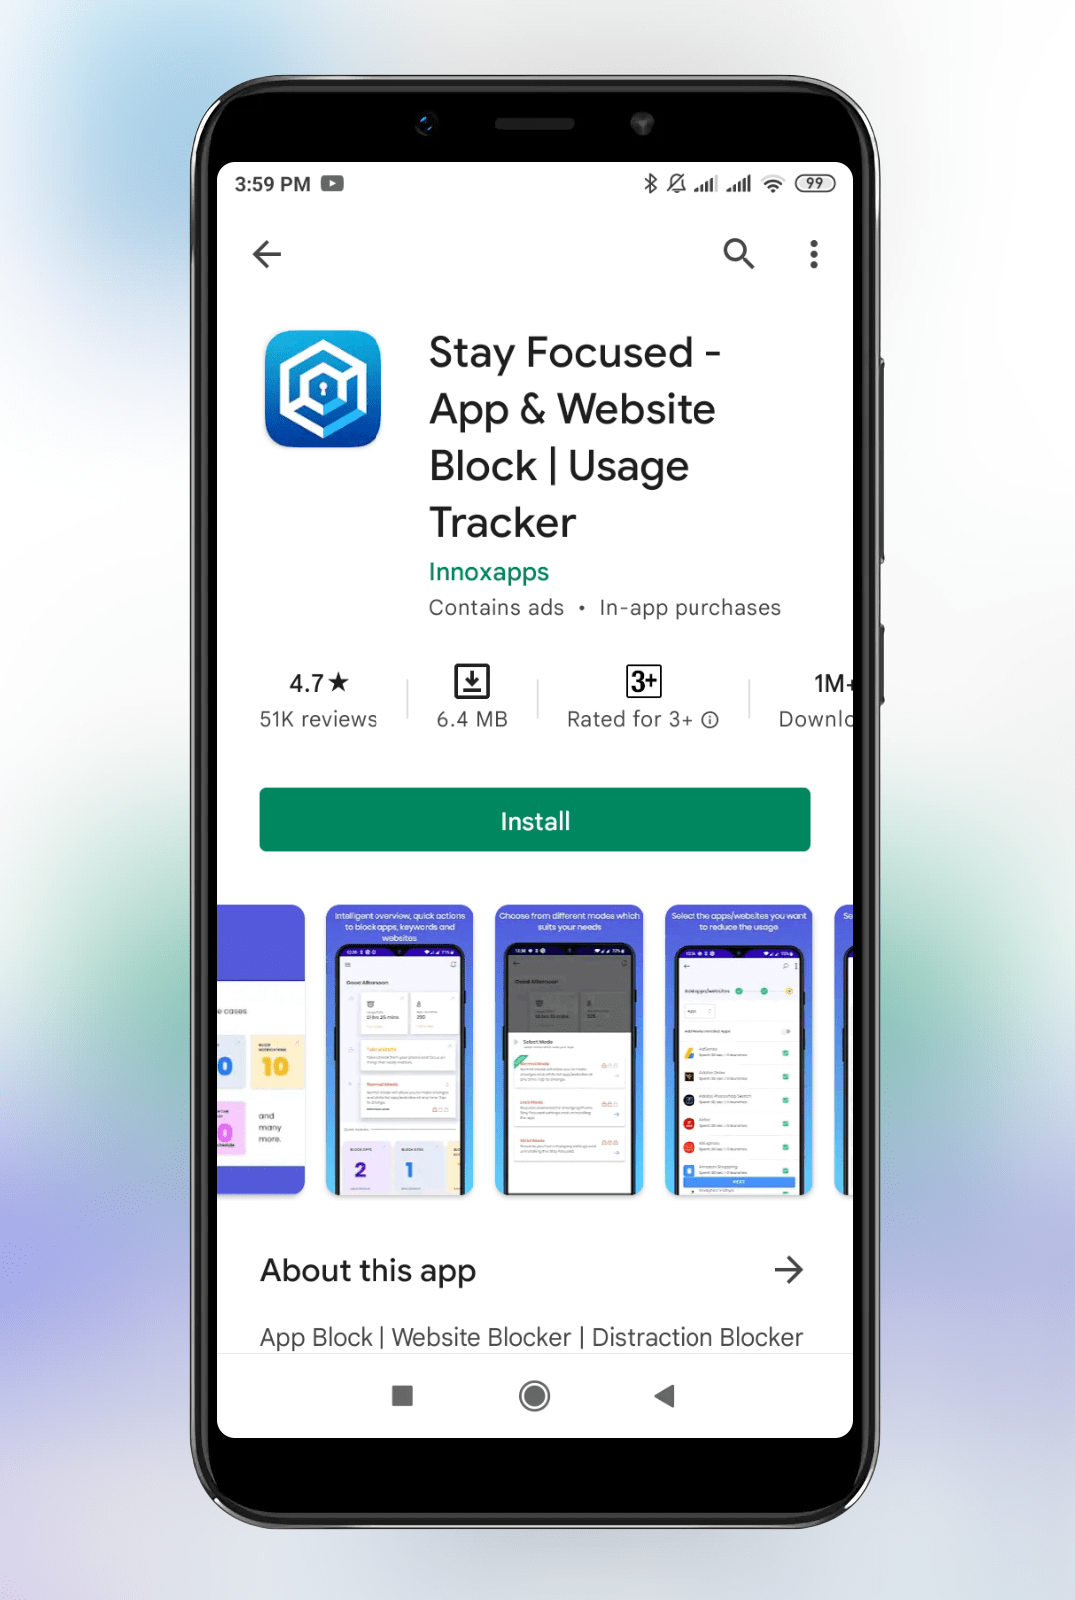 Stay Focused - App & Website Block